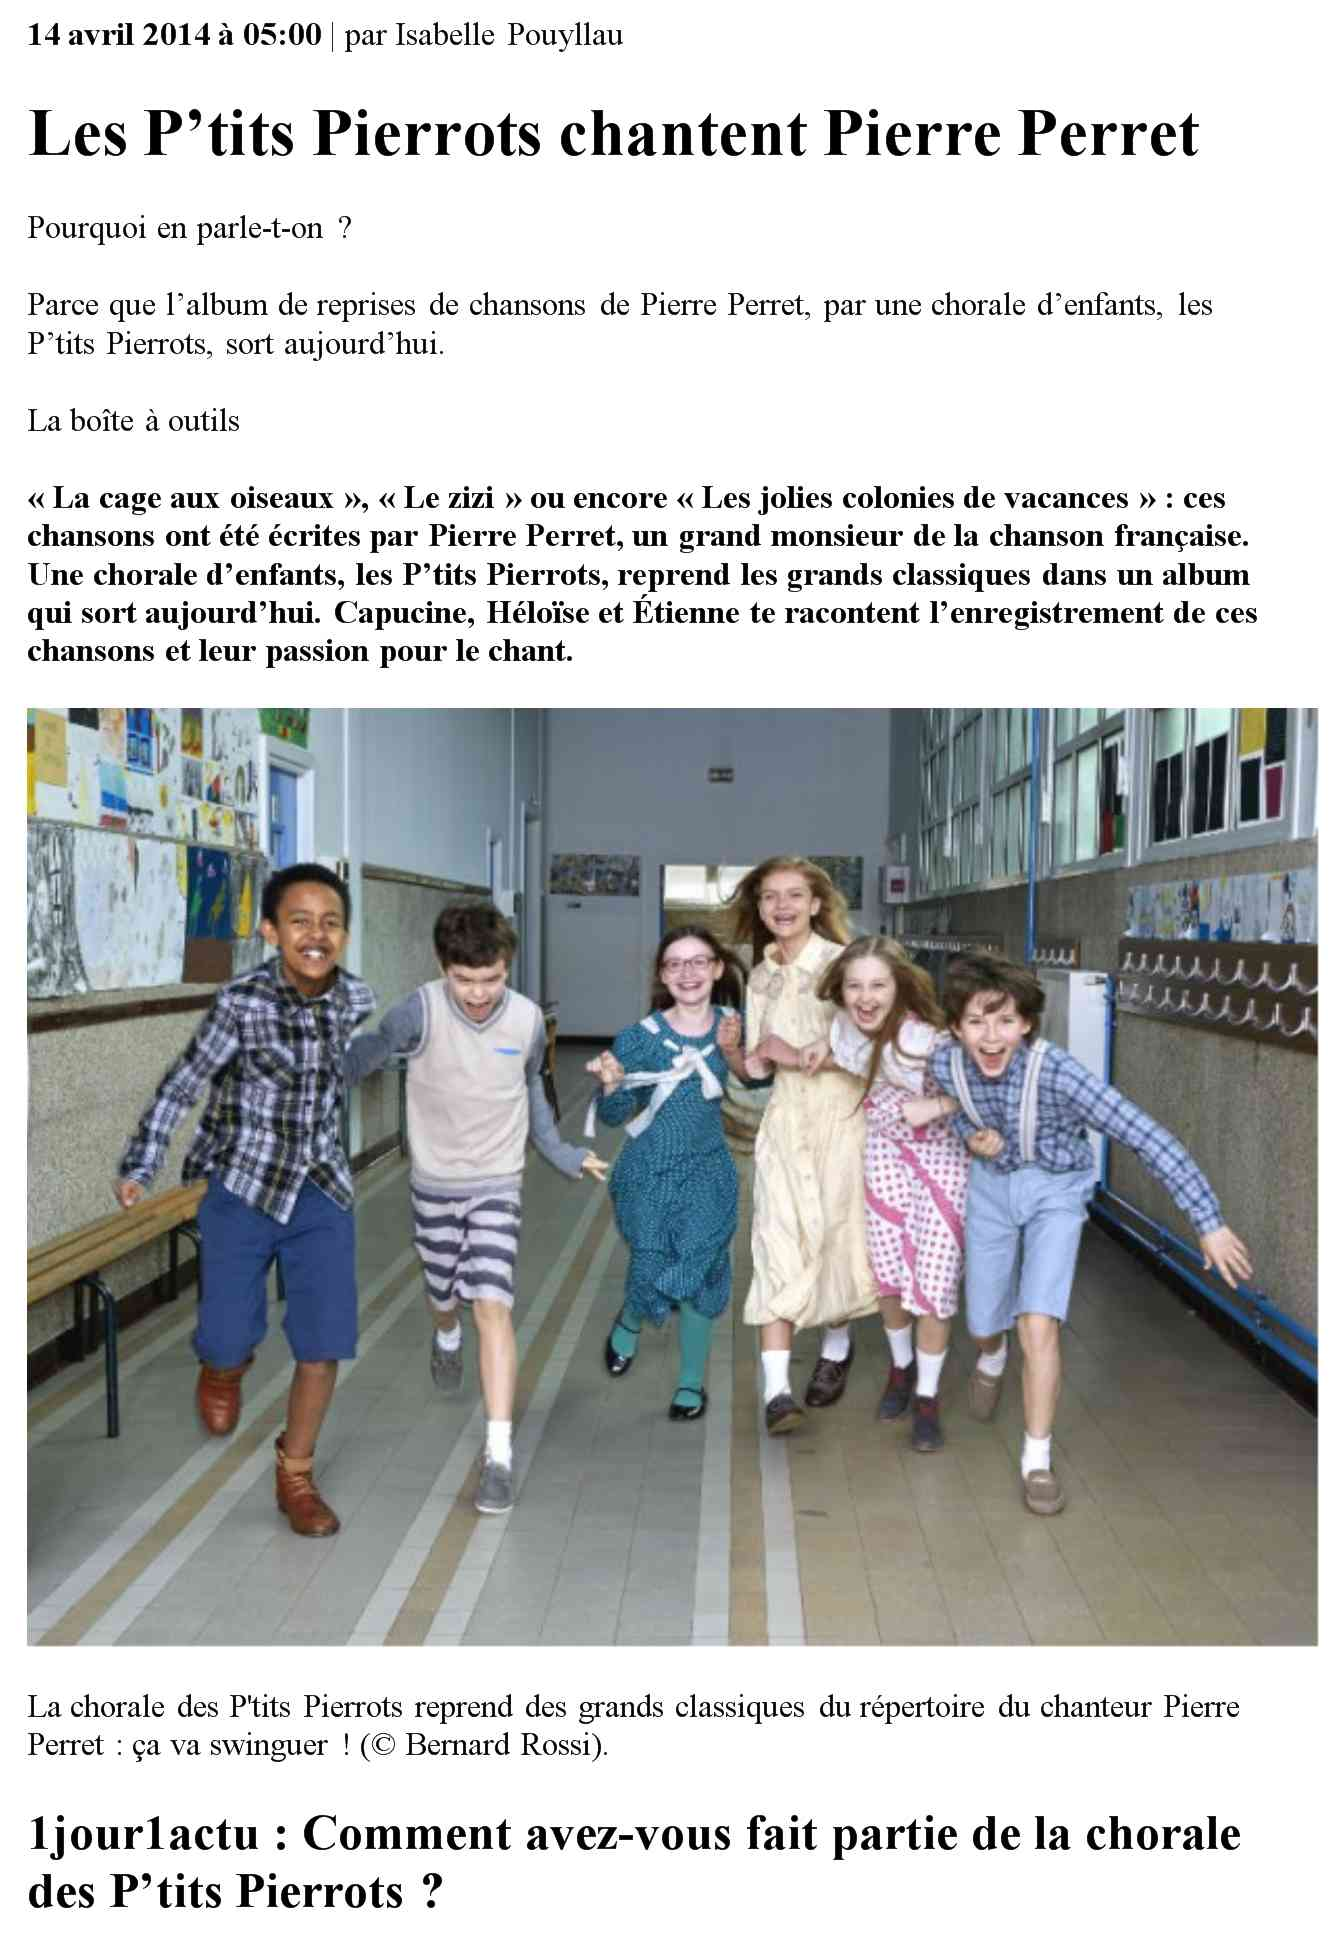 14 avril 2014 à 05:00 par Isabelle Pouyllau Les P'tits Pierrots chantent Pierre Perret Pourquoi en parle-t-on?